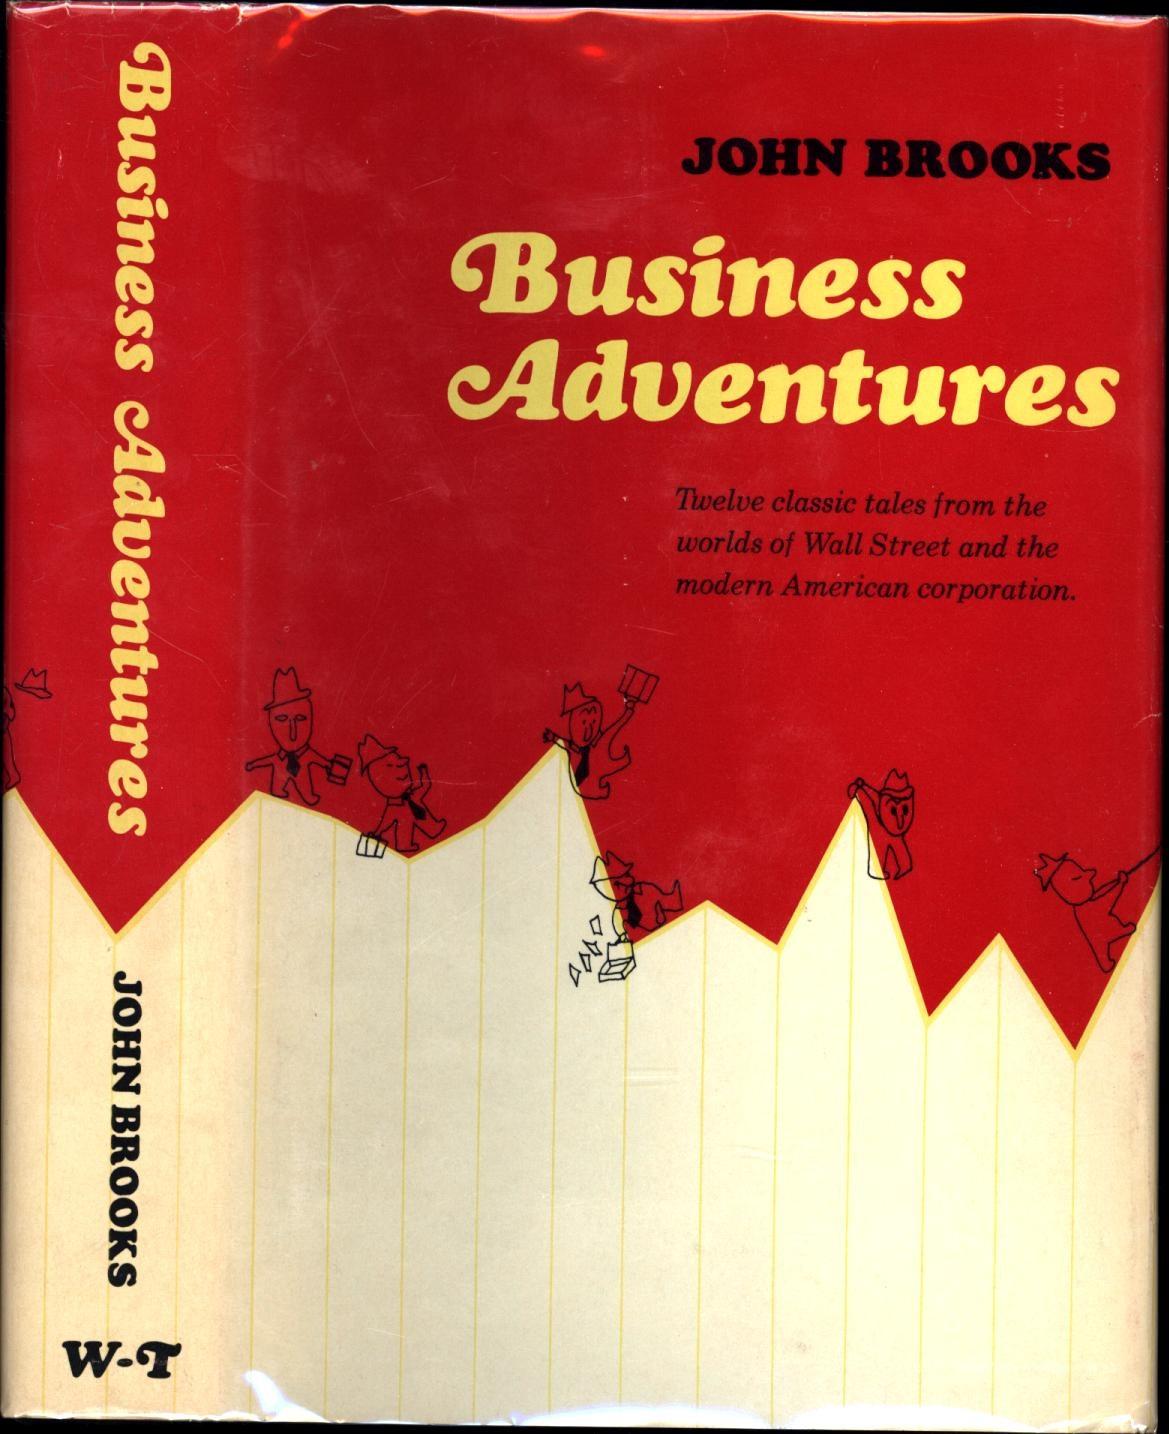 Vài nét về quyển sách "Những cuộc phiêu lưu trong kinh doanh"